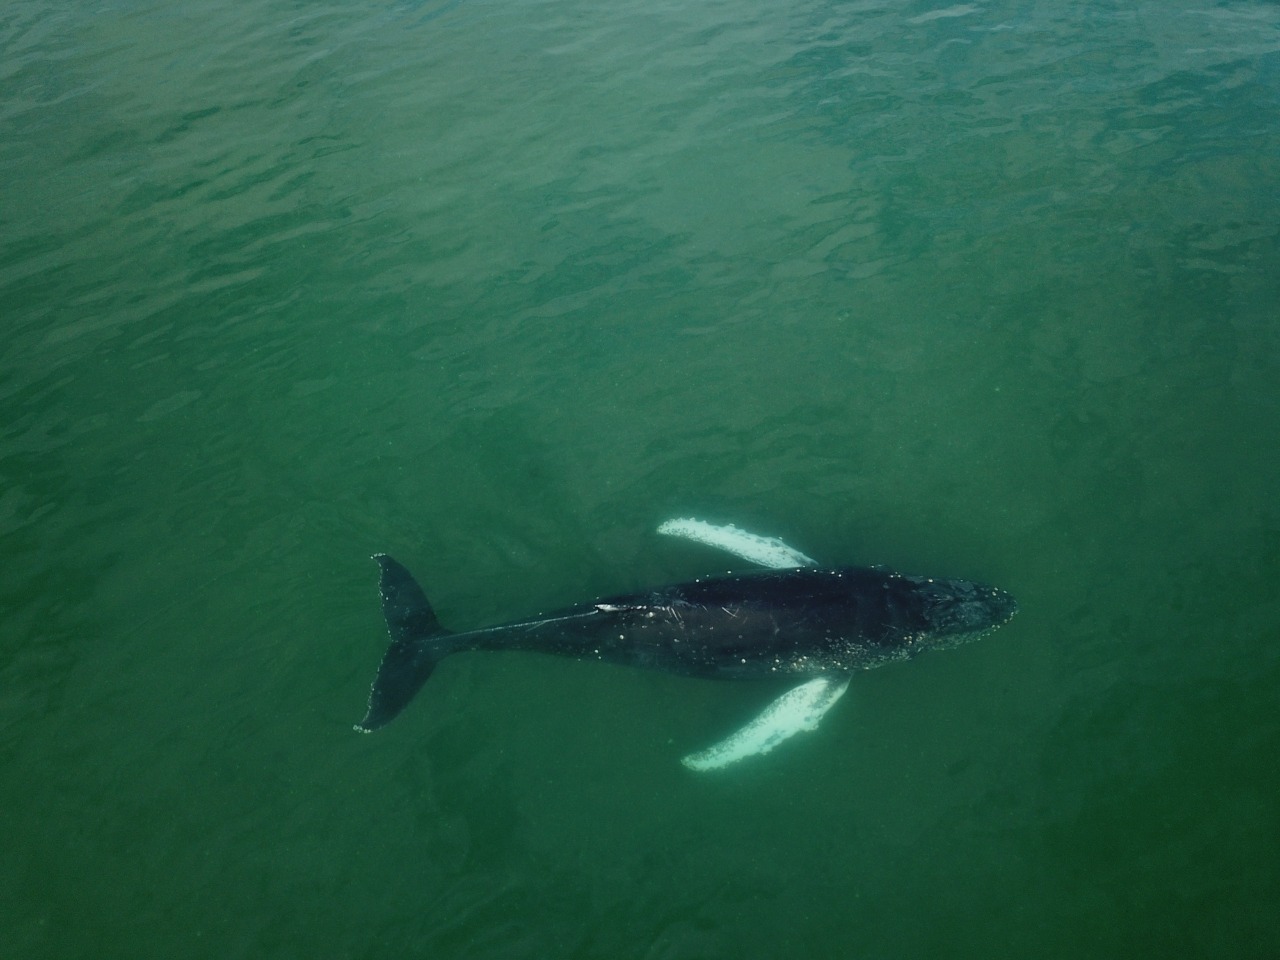 La ballena ya nada en aguas seguras. (Foto: gentileza Candela Fernández)